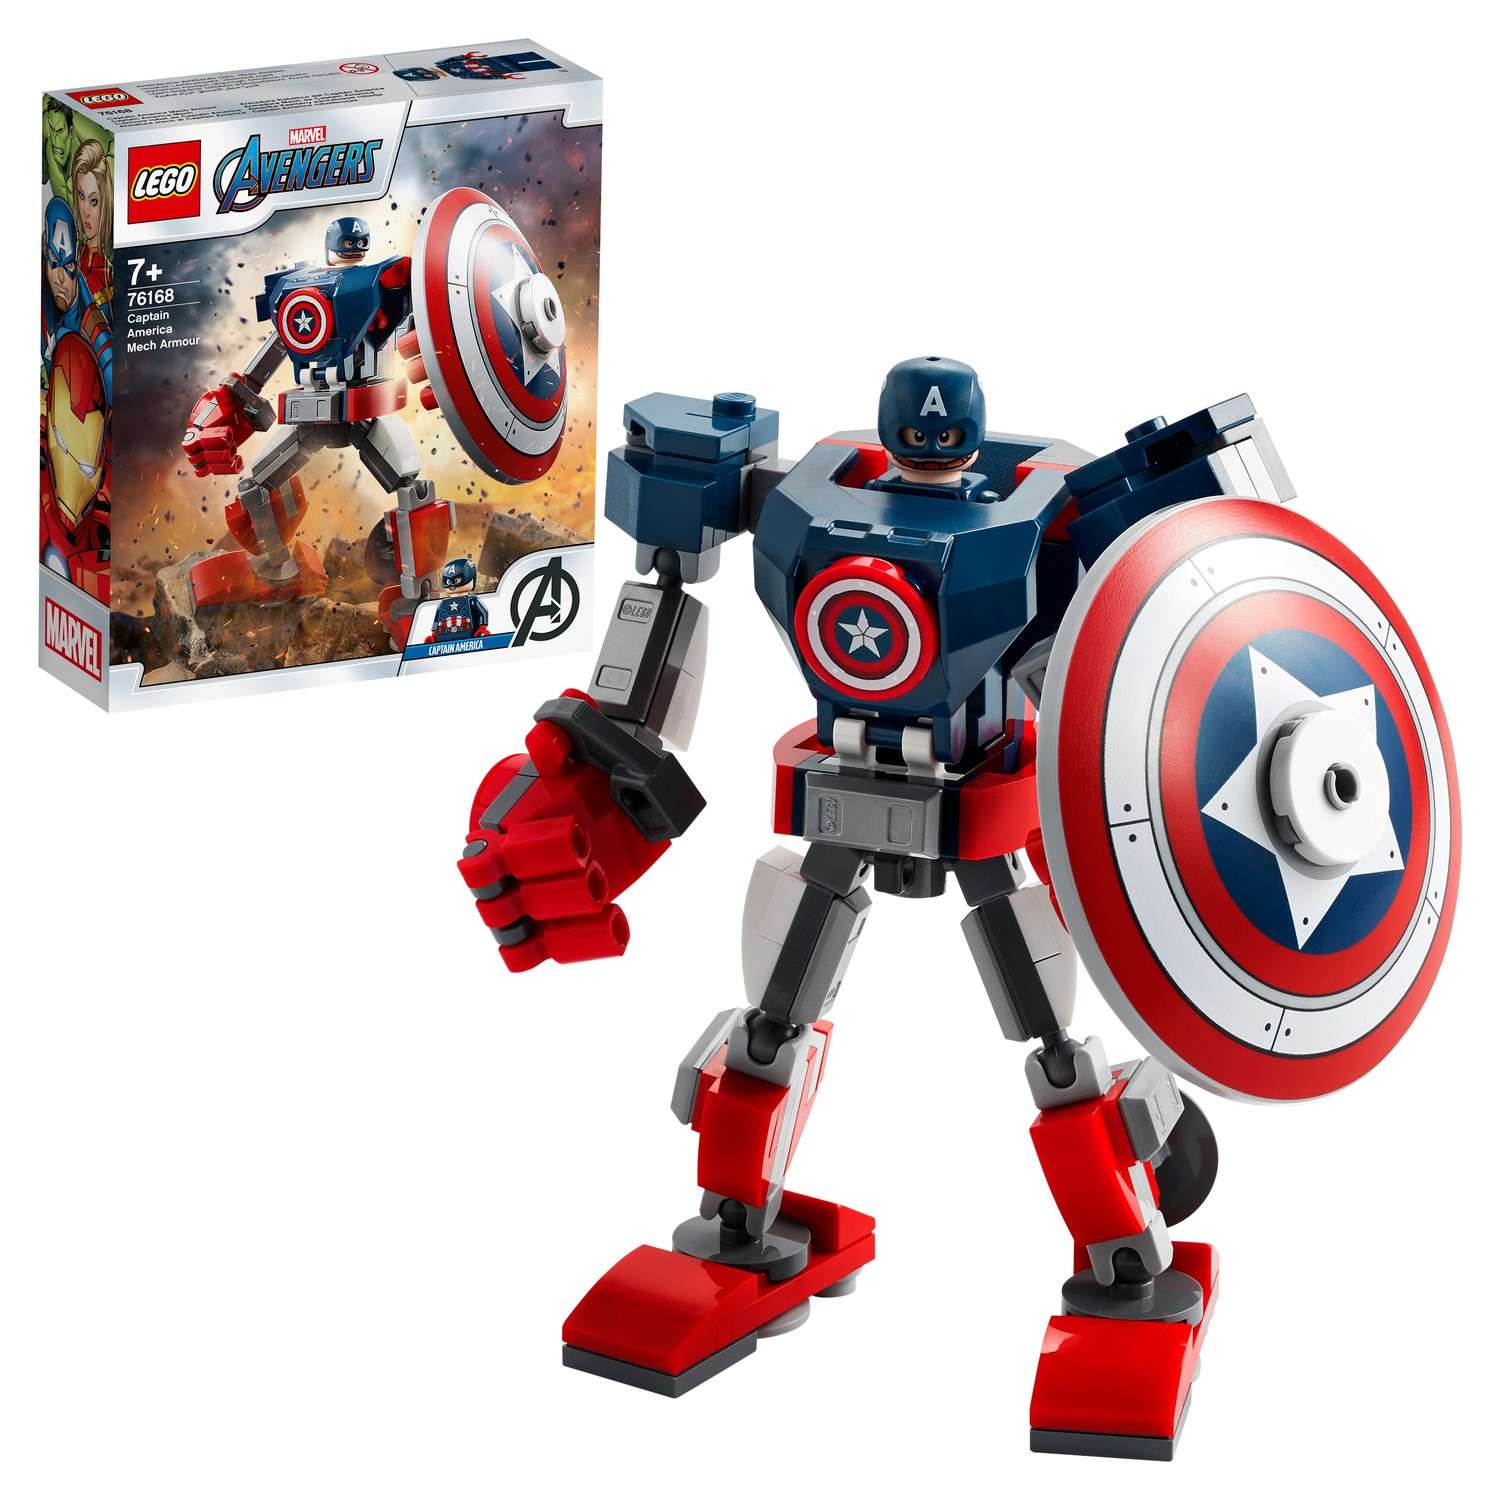 Конструктор LEGO DC Super Heroes Капитан Америка Робот 76168 - фото 1